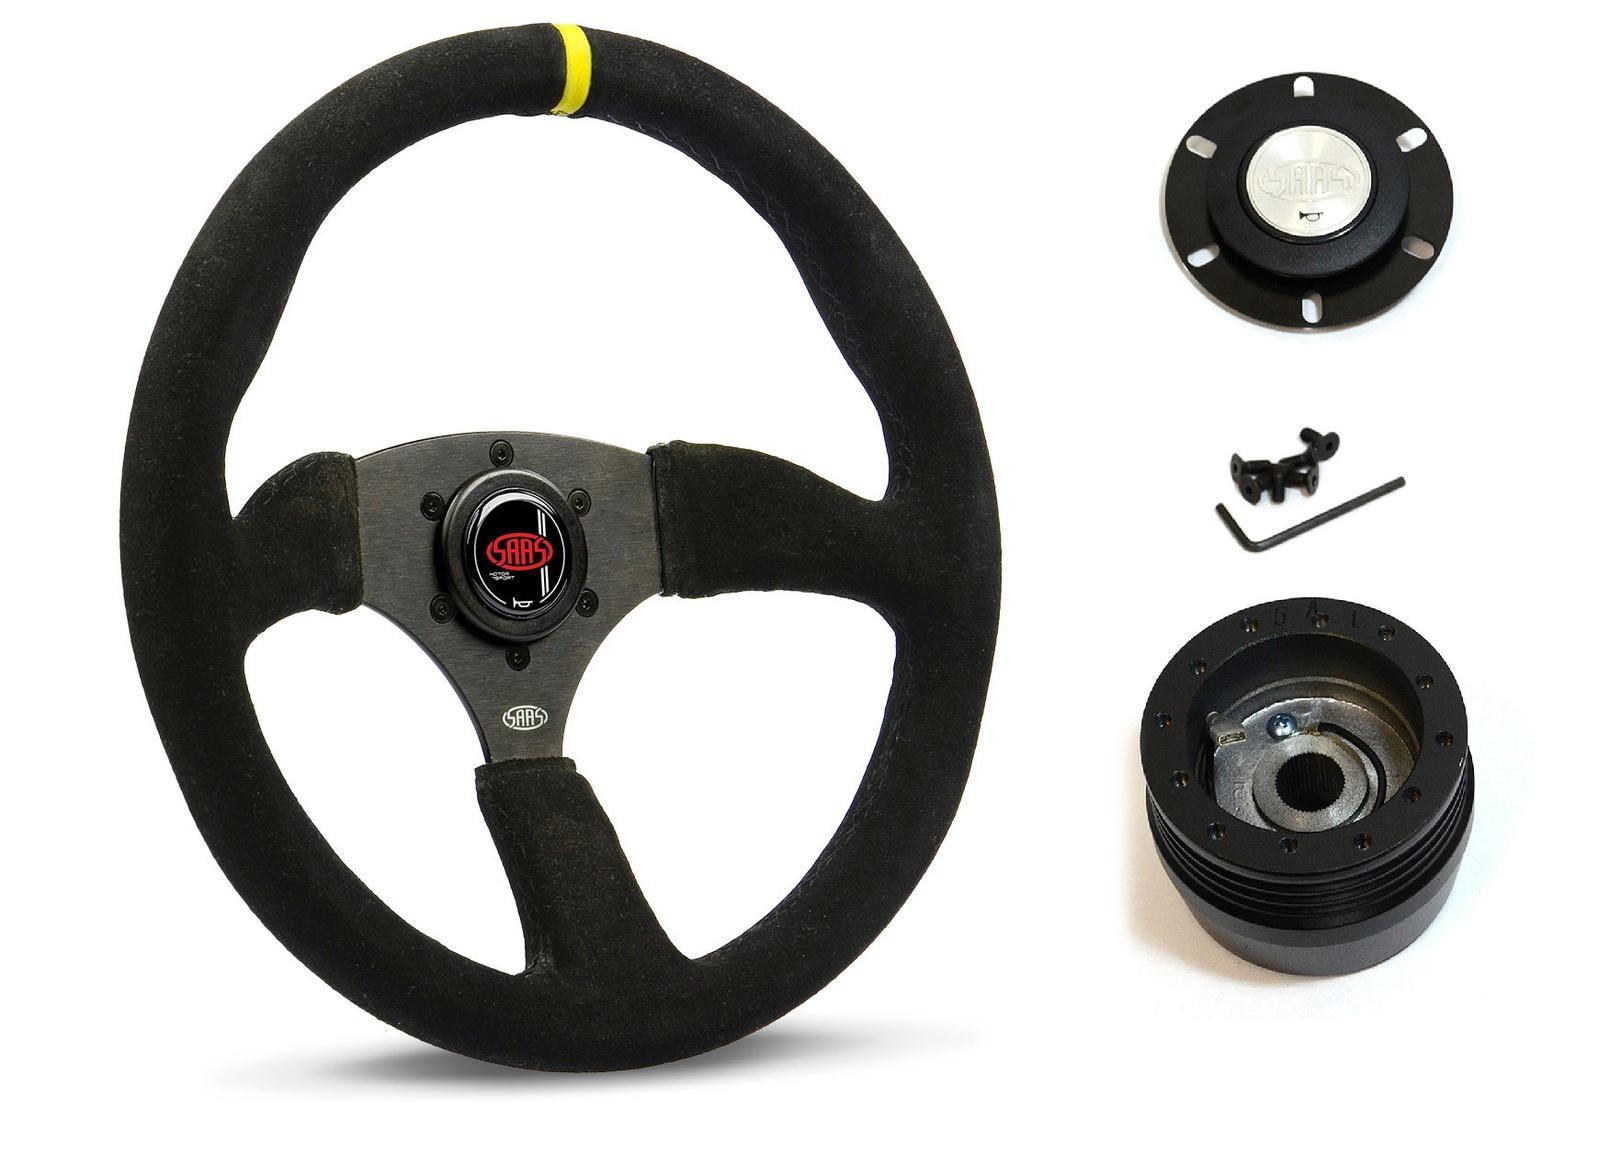 SAAS Steering Wheel Suede 14" ADR Tokyo Motorsport Black Spoke + Indicator SWMS2 and SAAS boss kit for Nissan Civilian (Commercial/Midi Bus) 1990-1995